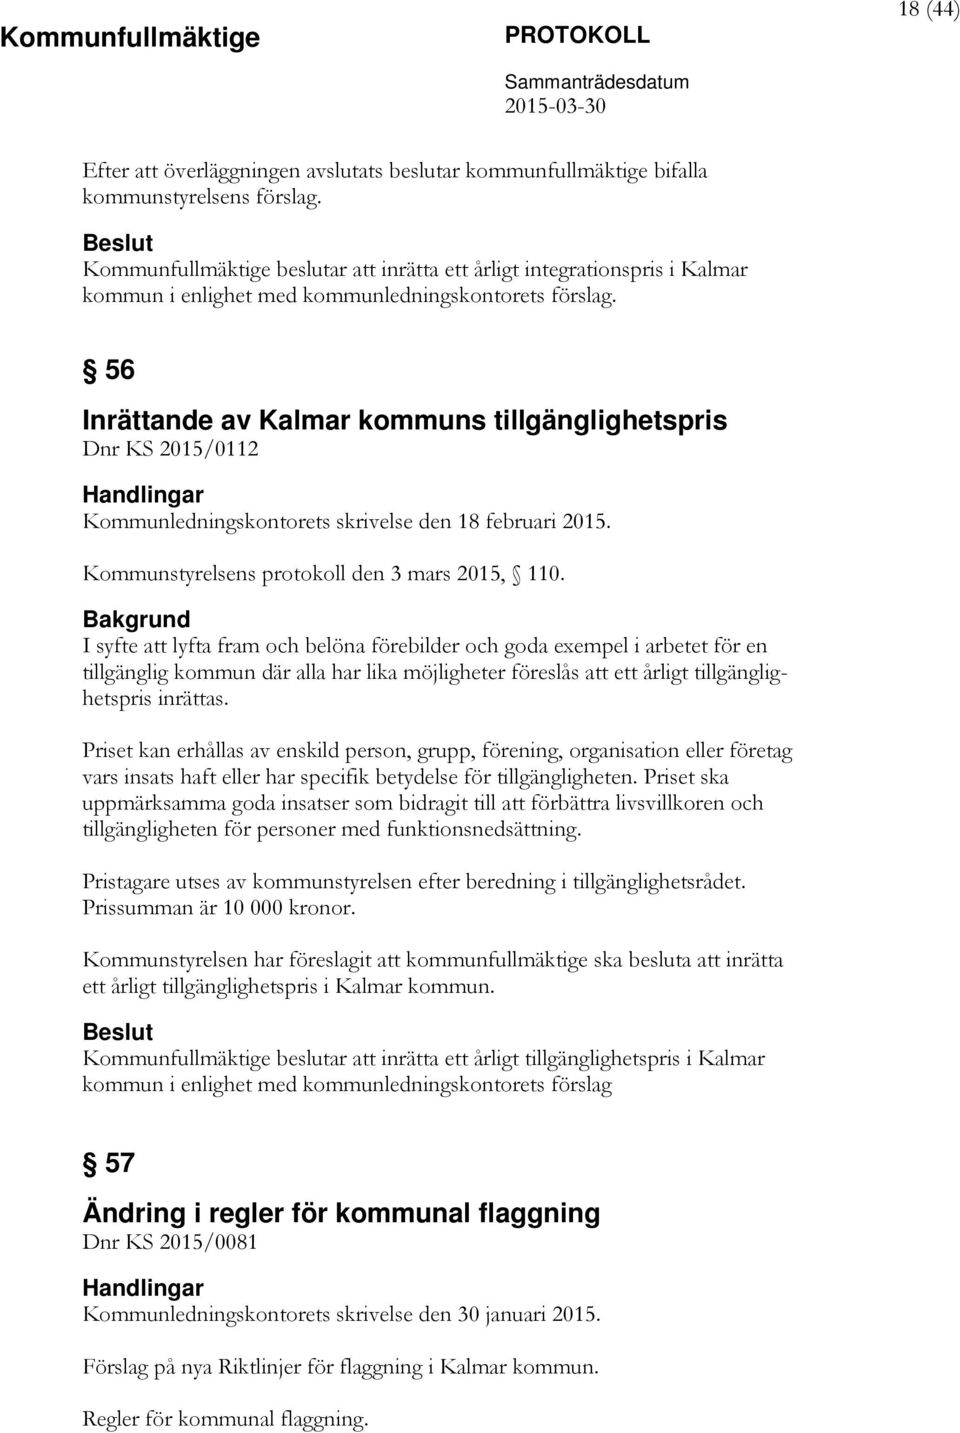 56 Inrättande av Kalmar kommuns tillgänglighetspris Dnr KS 2015/0112 Kommunledningskontorets skrivelse den 18 februari 2015. Kommunstyrelsens protokoll den 3 mars 2015, 110.